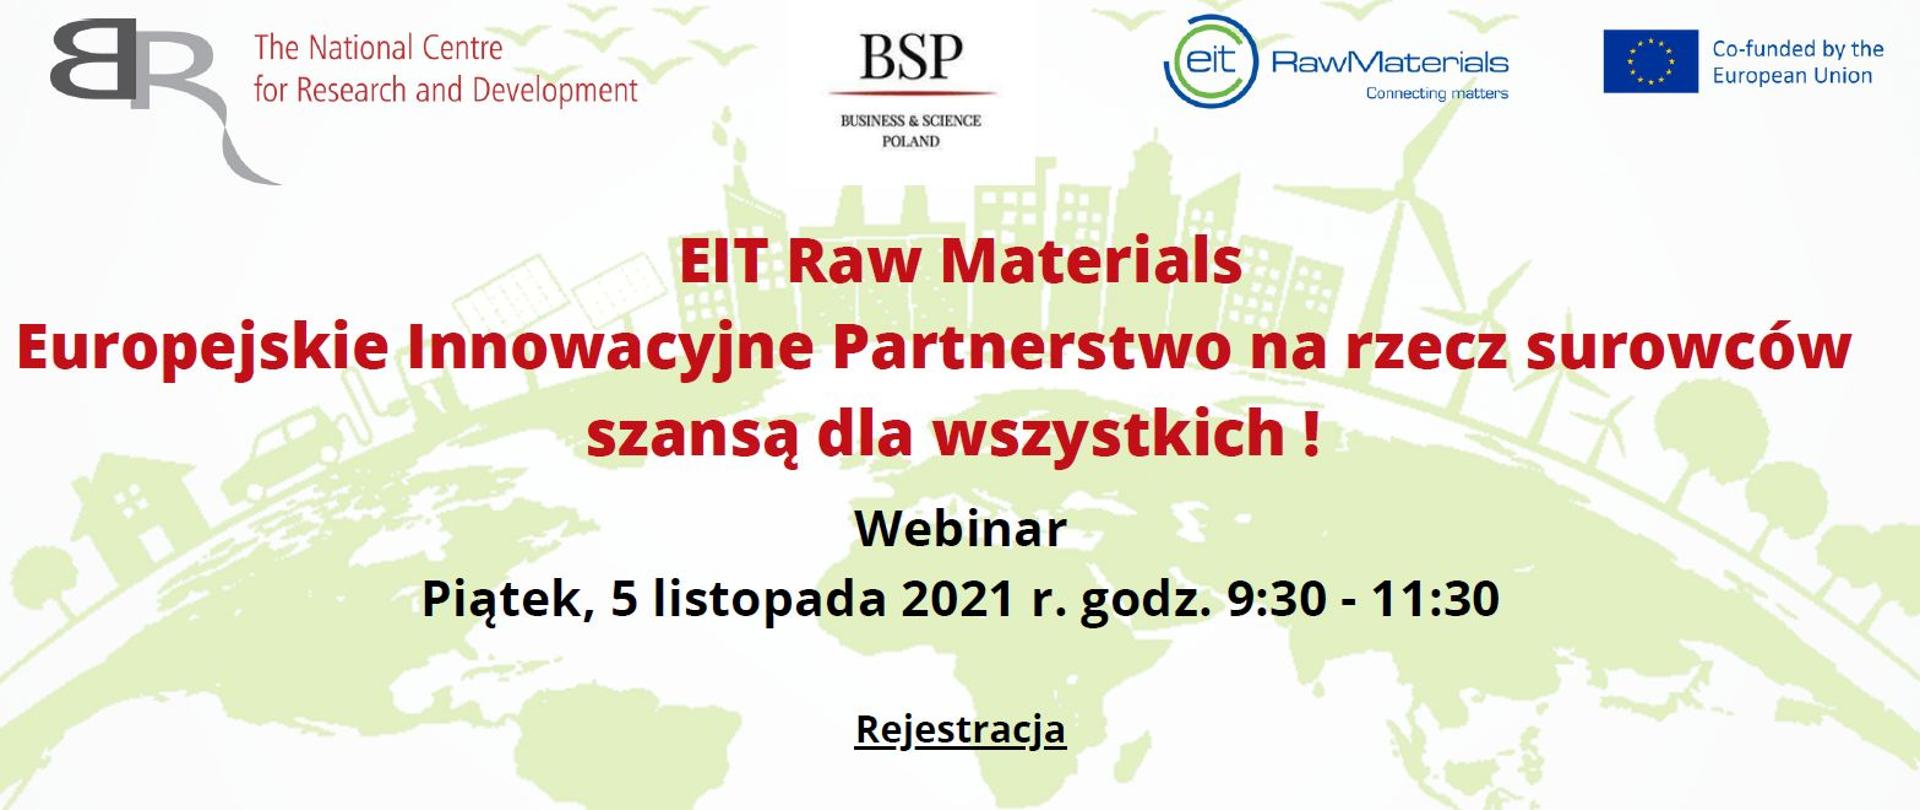 EIT Raw Materials: Europejskie Innowacyjne Partnerstwo na rzecz surowców szansą dla wszystkich!